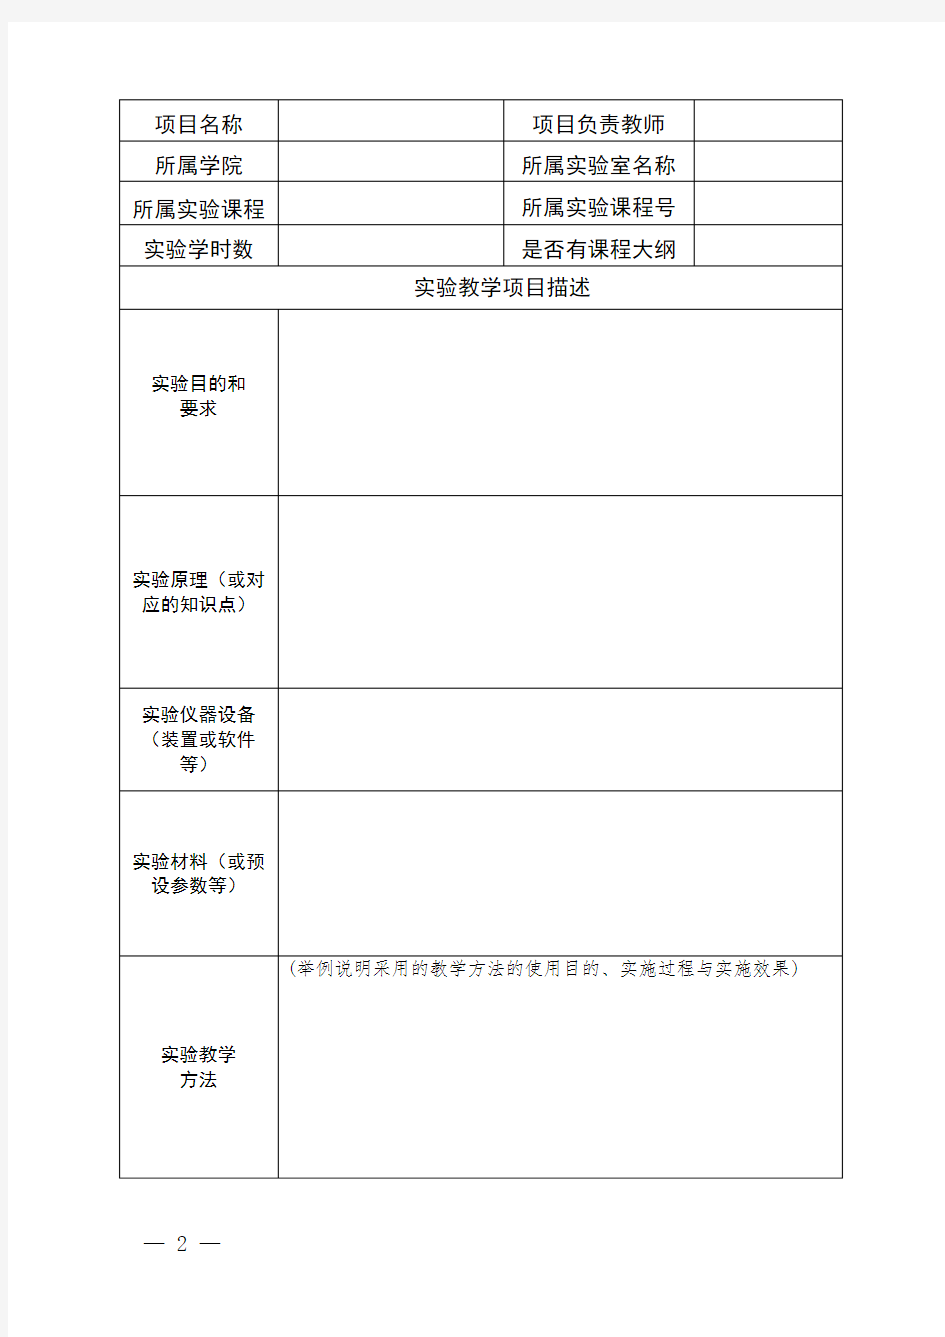 上海海洋大学虚拟仿真教学项目申报表-教务在线